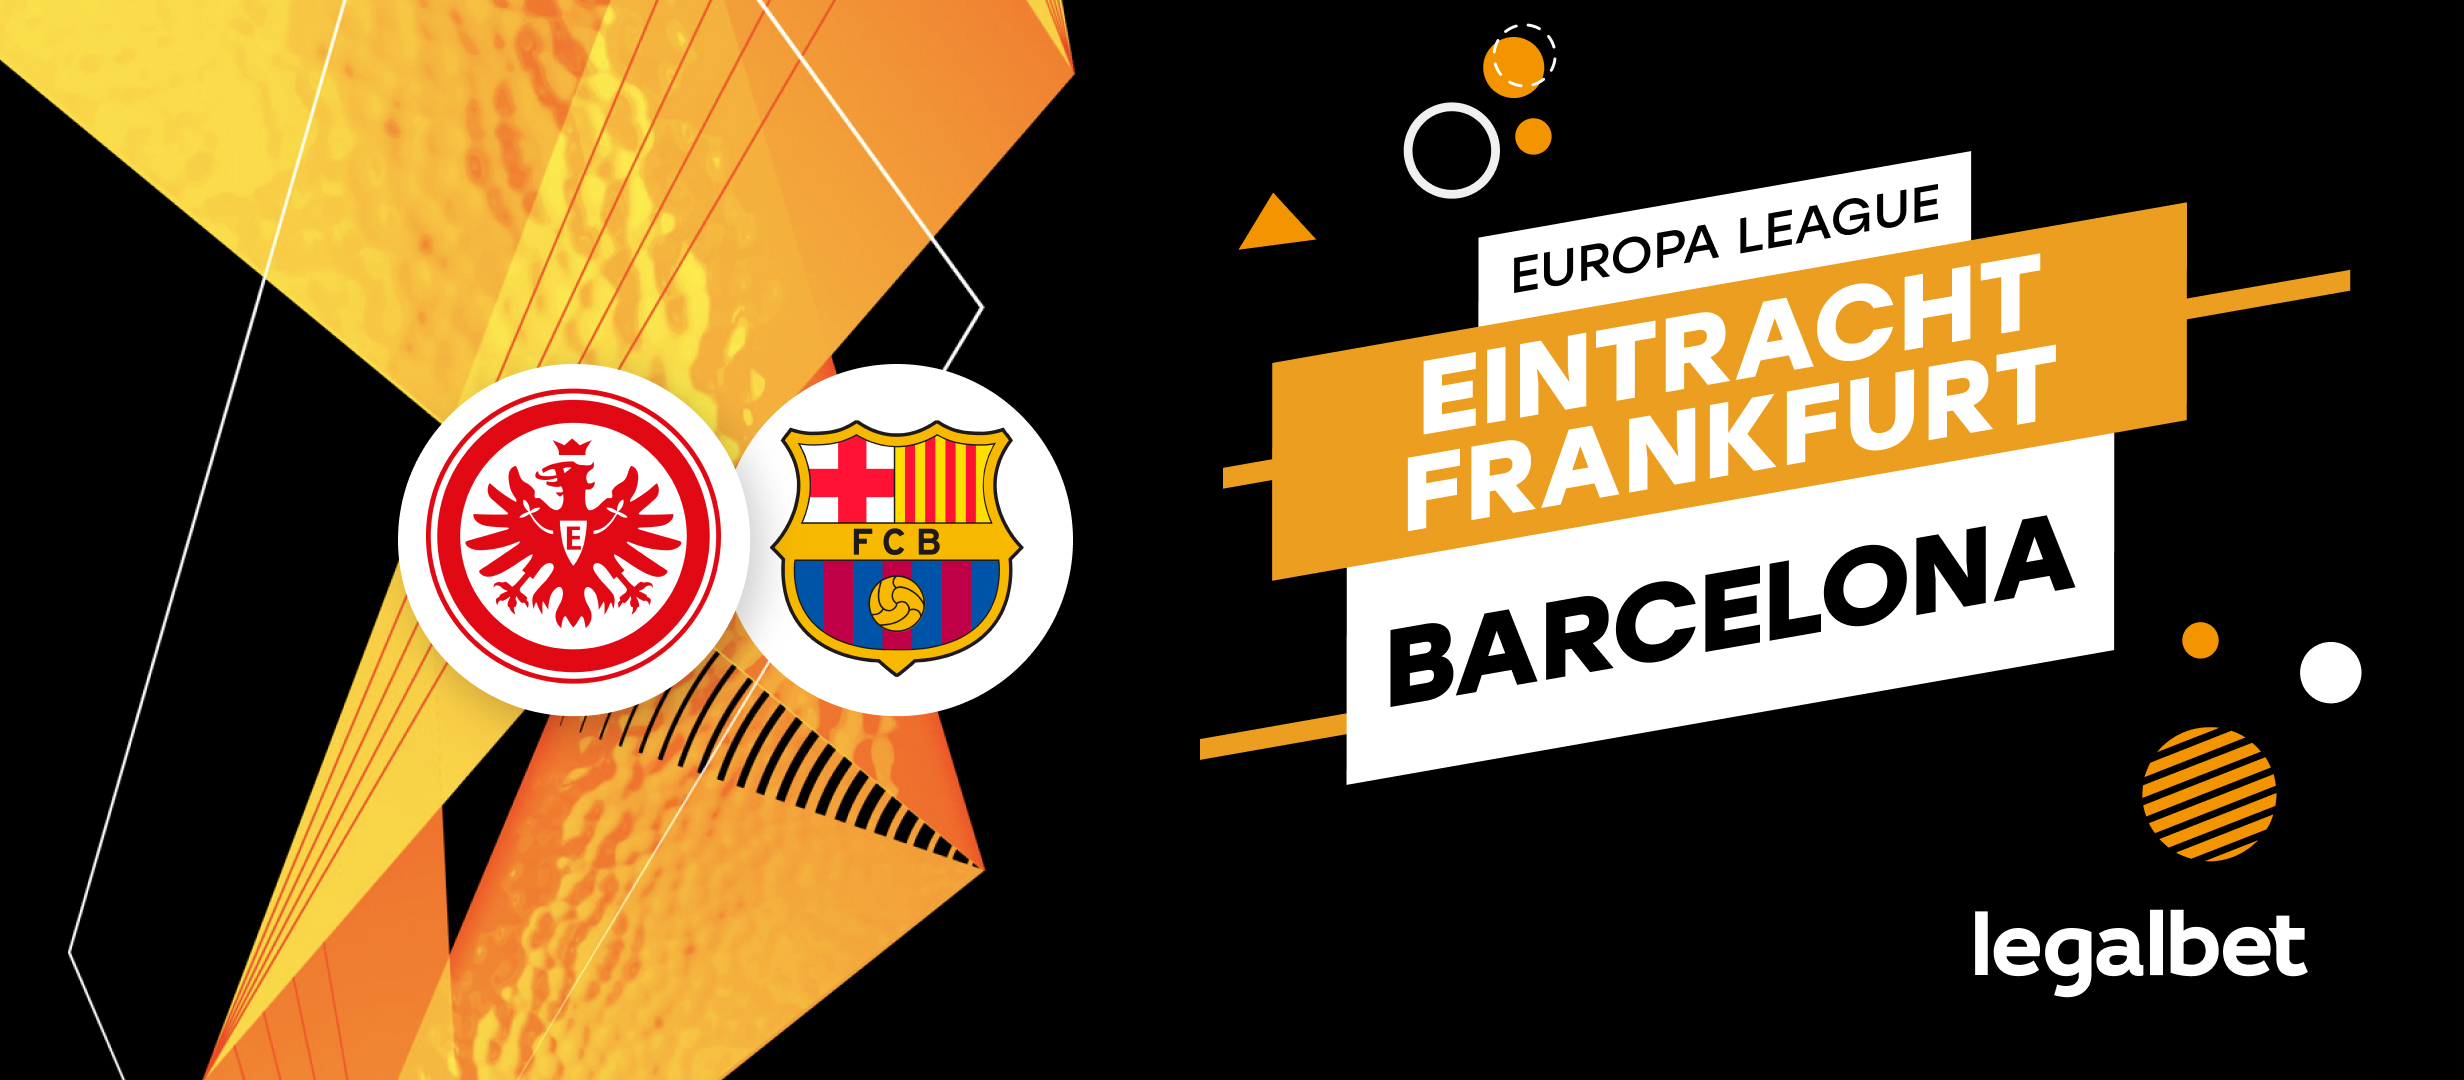 Apuestas y cuotas Eintracht Frankfurt - Barcelona, Europa League 2021/22